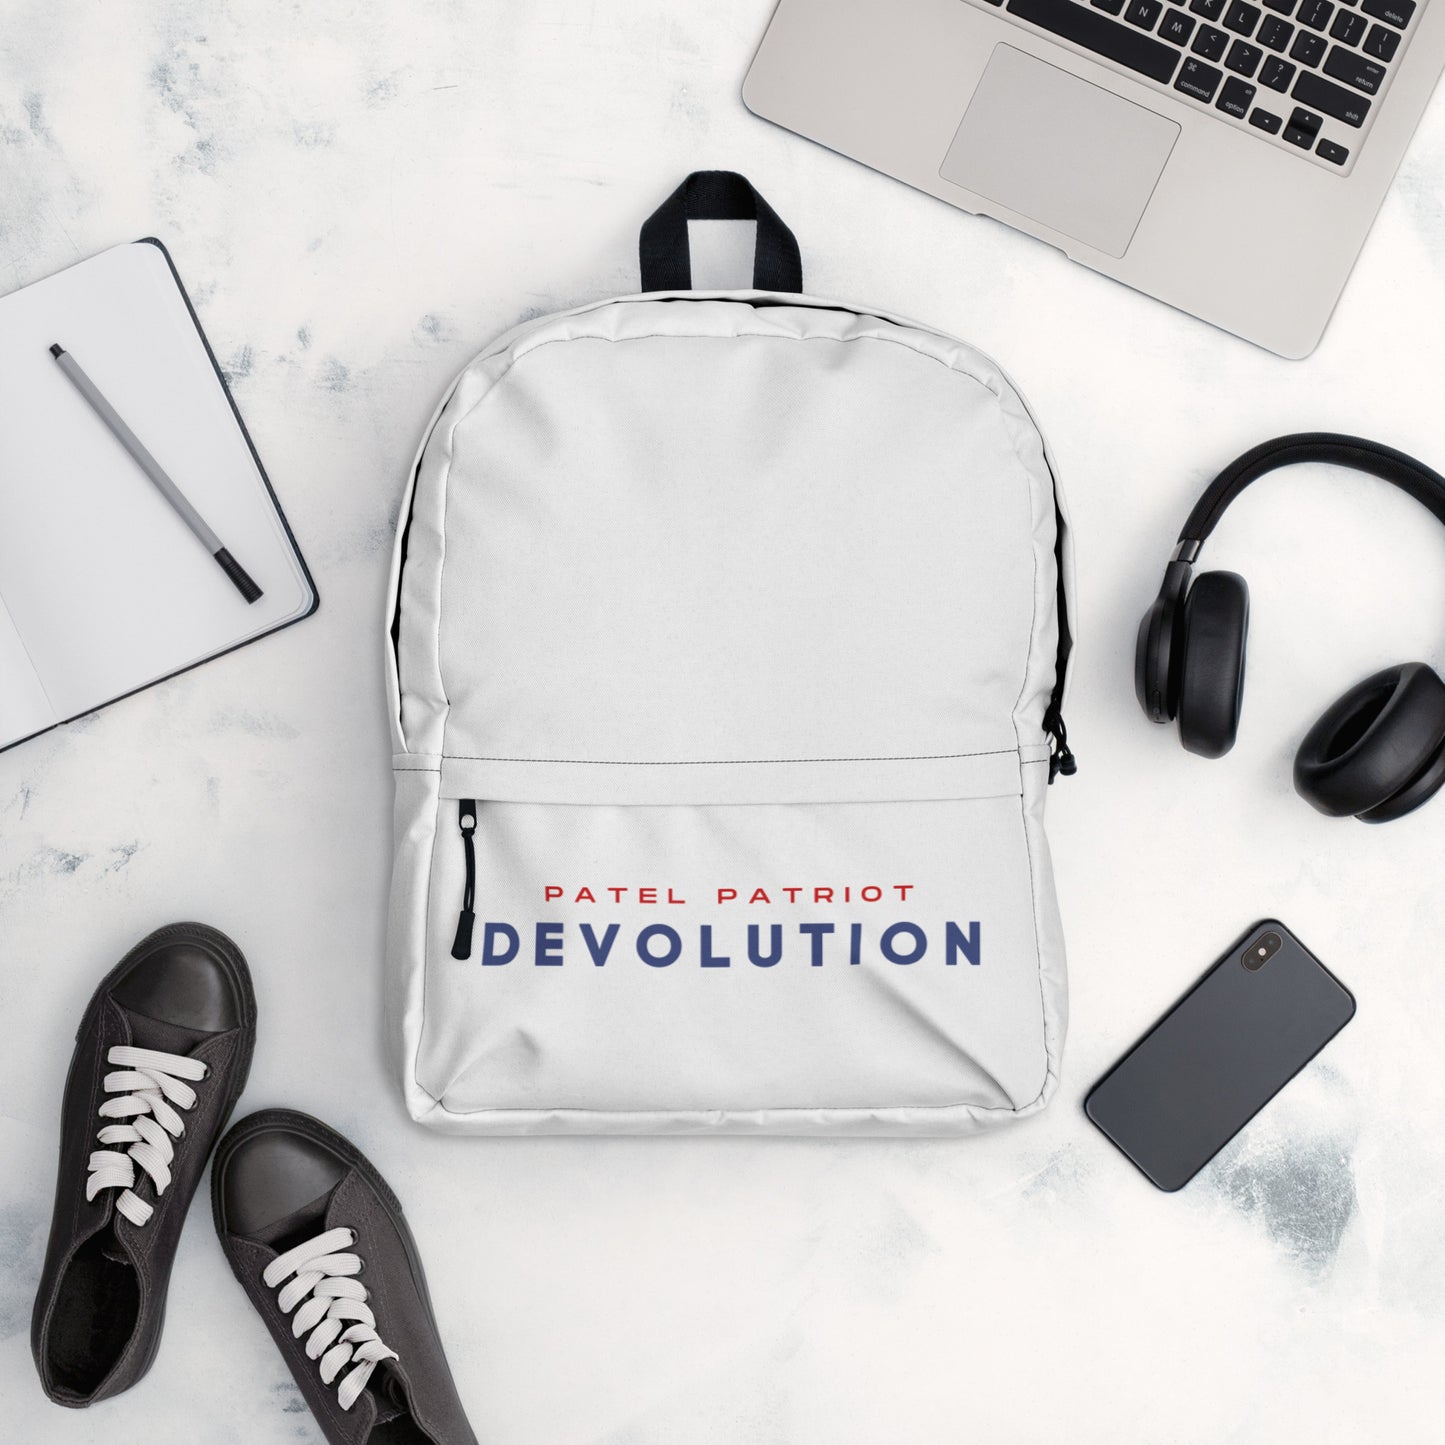 Devolution Backpack (white)